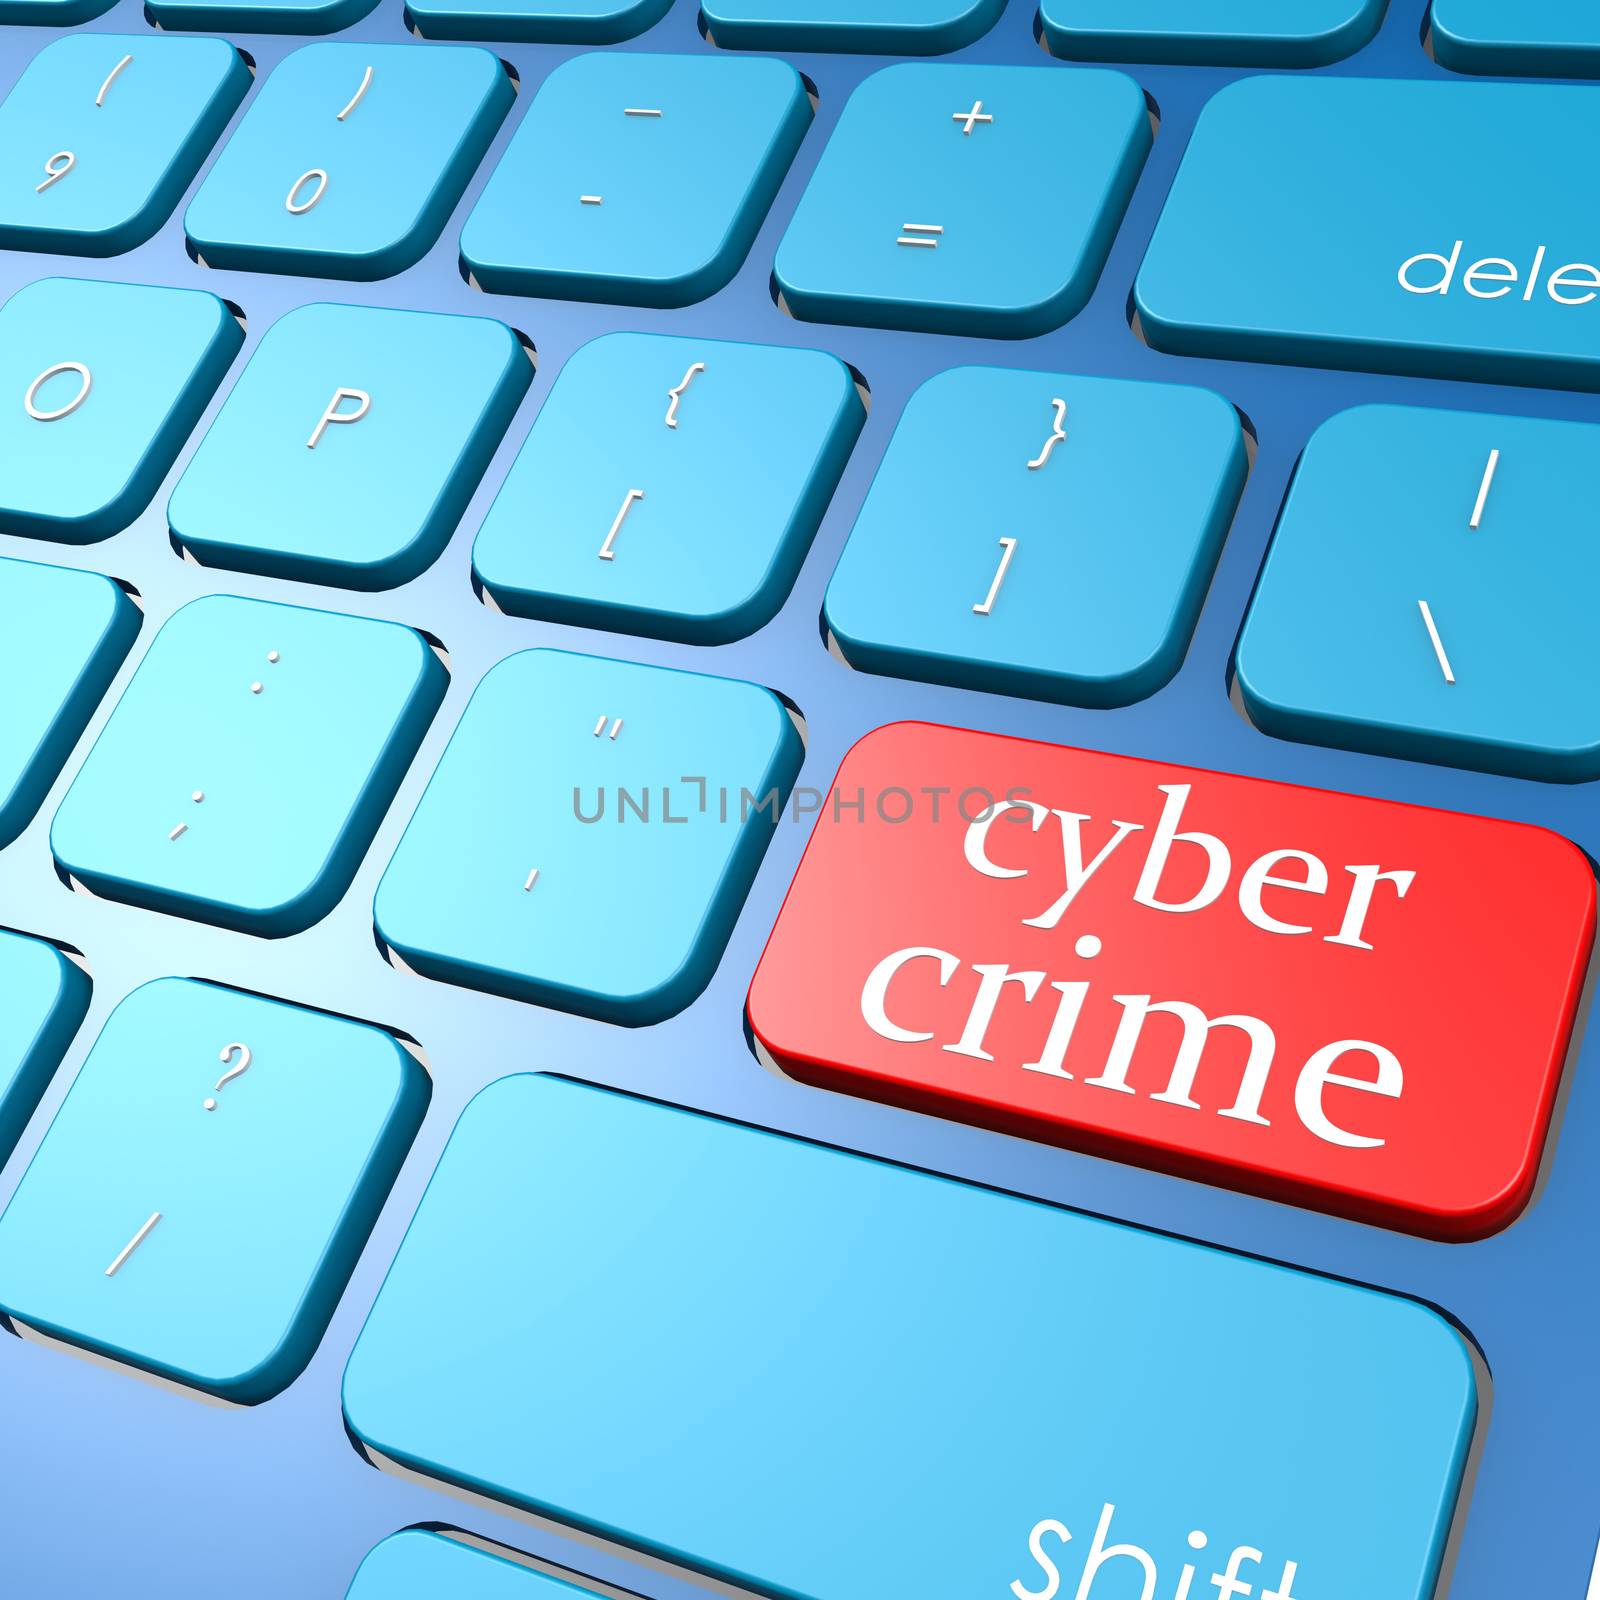 Cyber crime keyboard